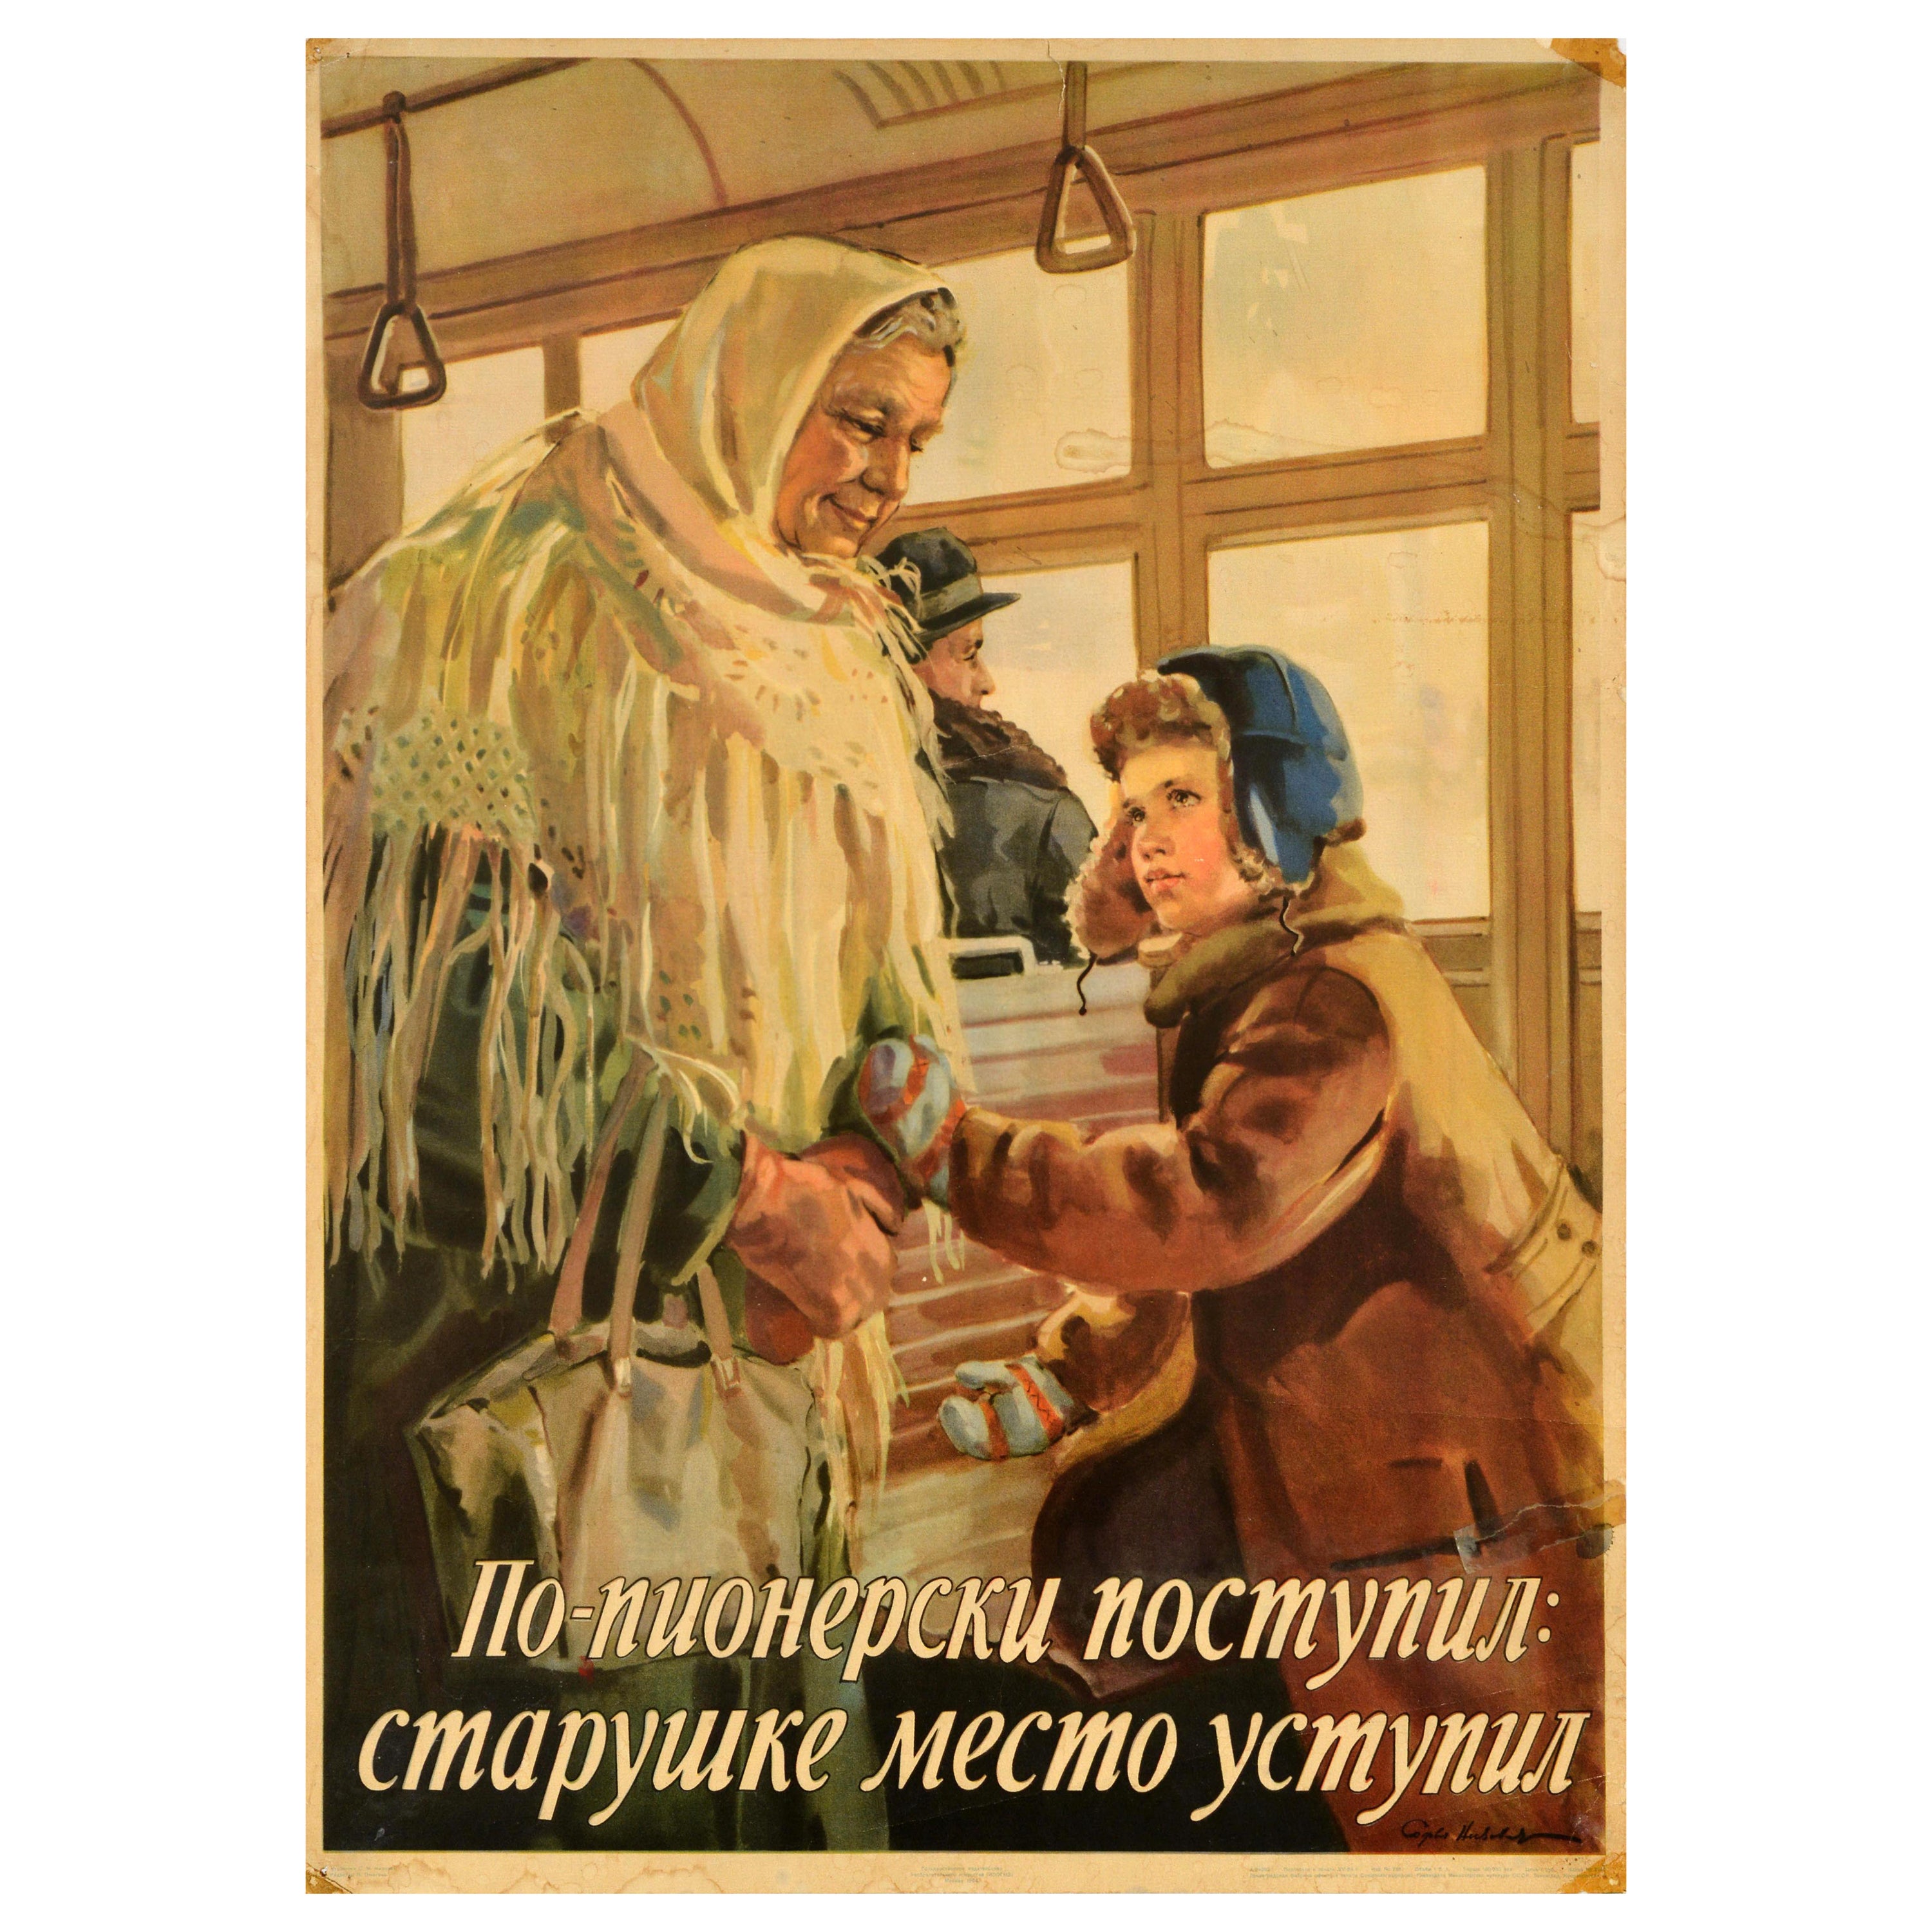 Affiche rétro originale soviétique, Conducte polie des pionniers en hommage aux anciens de l'URSS